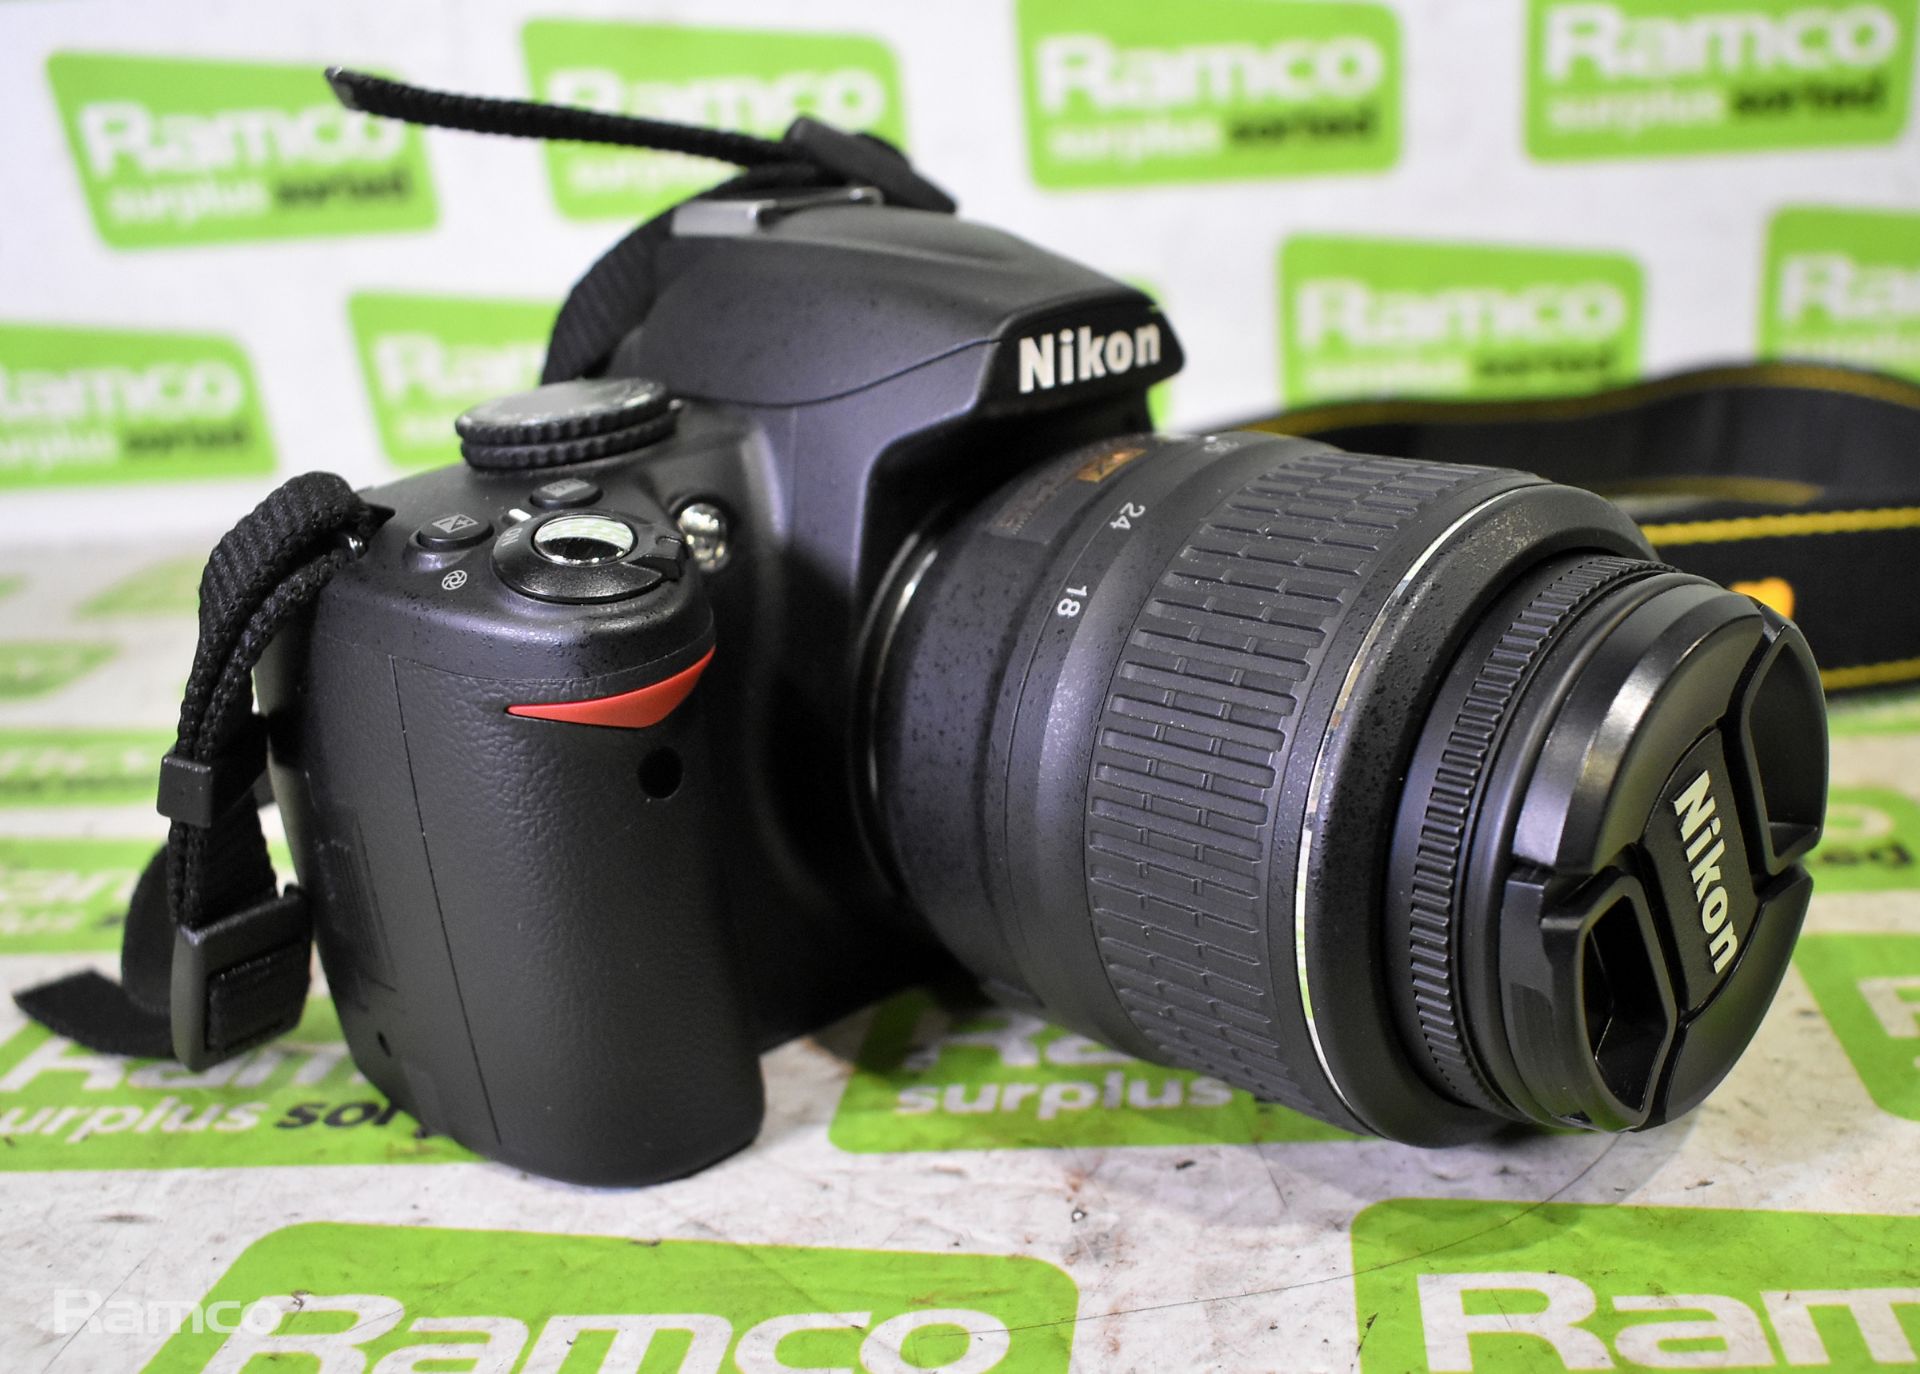 Nikon D3000 digital camera with AF-S NIKKOR 18-55mm lens - with charger - Bild 2 aus 13